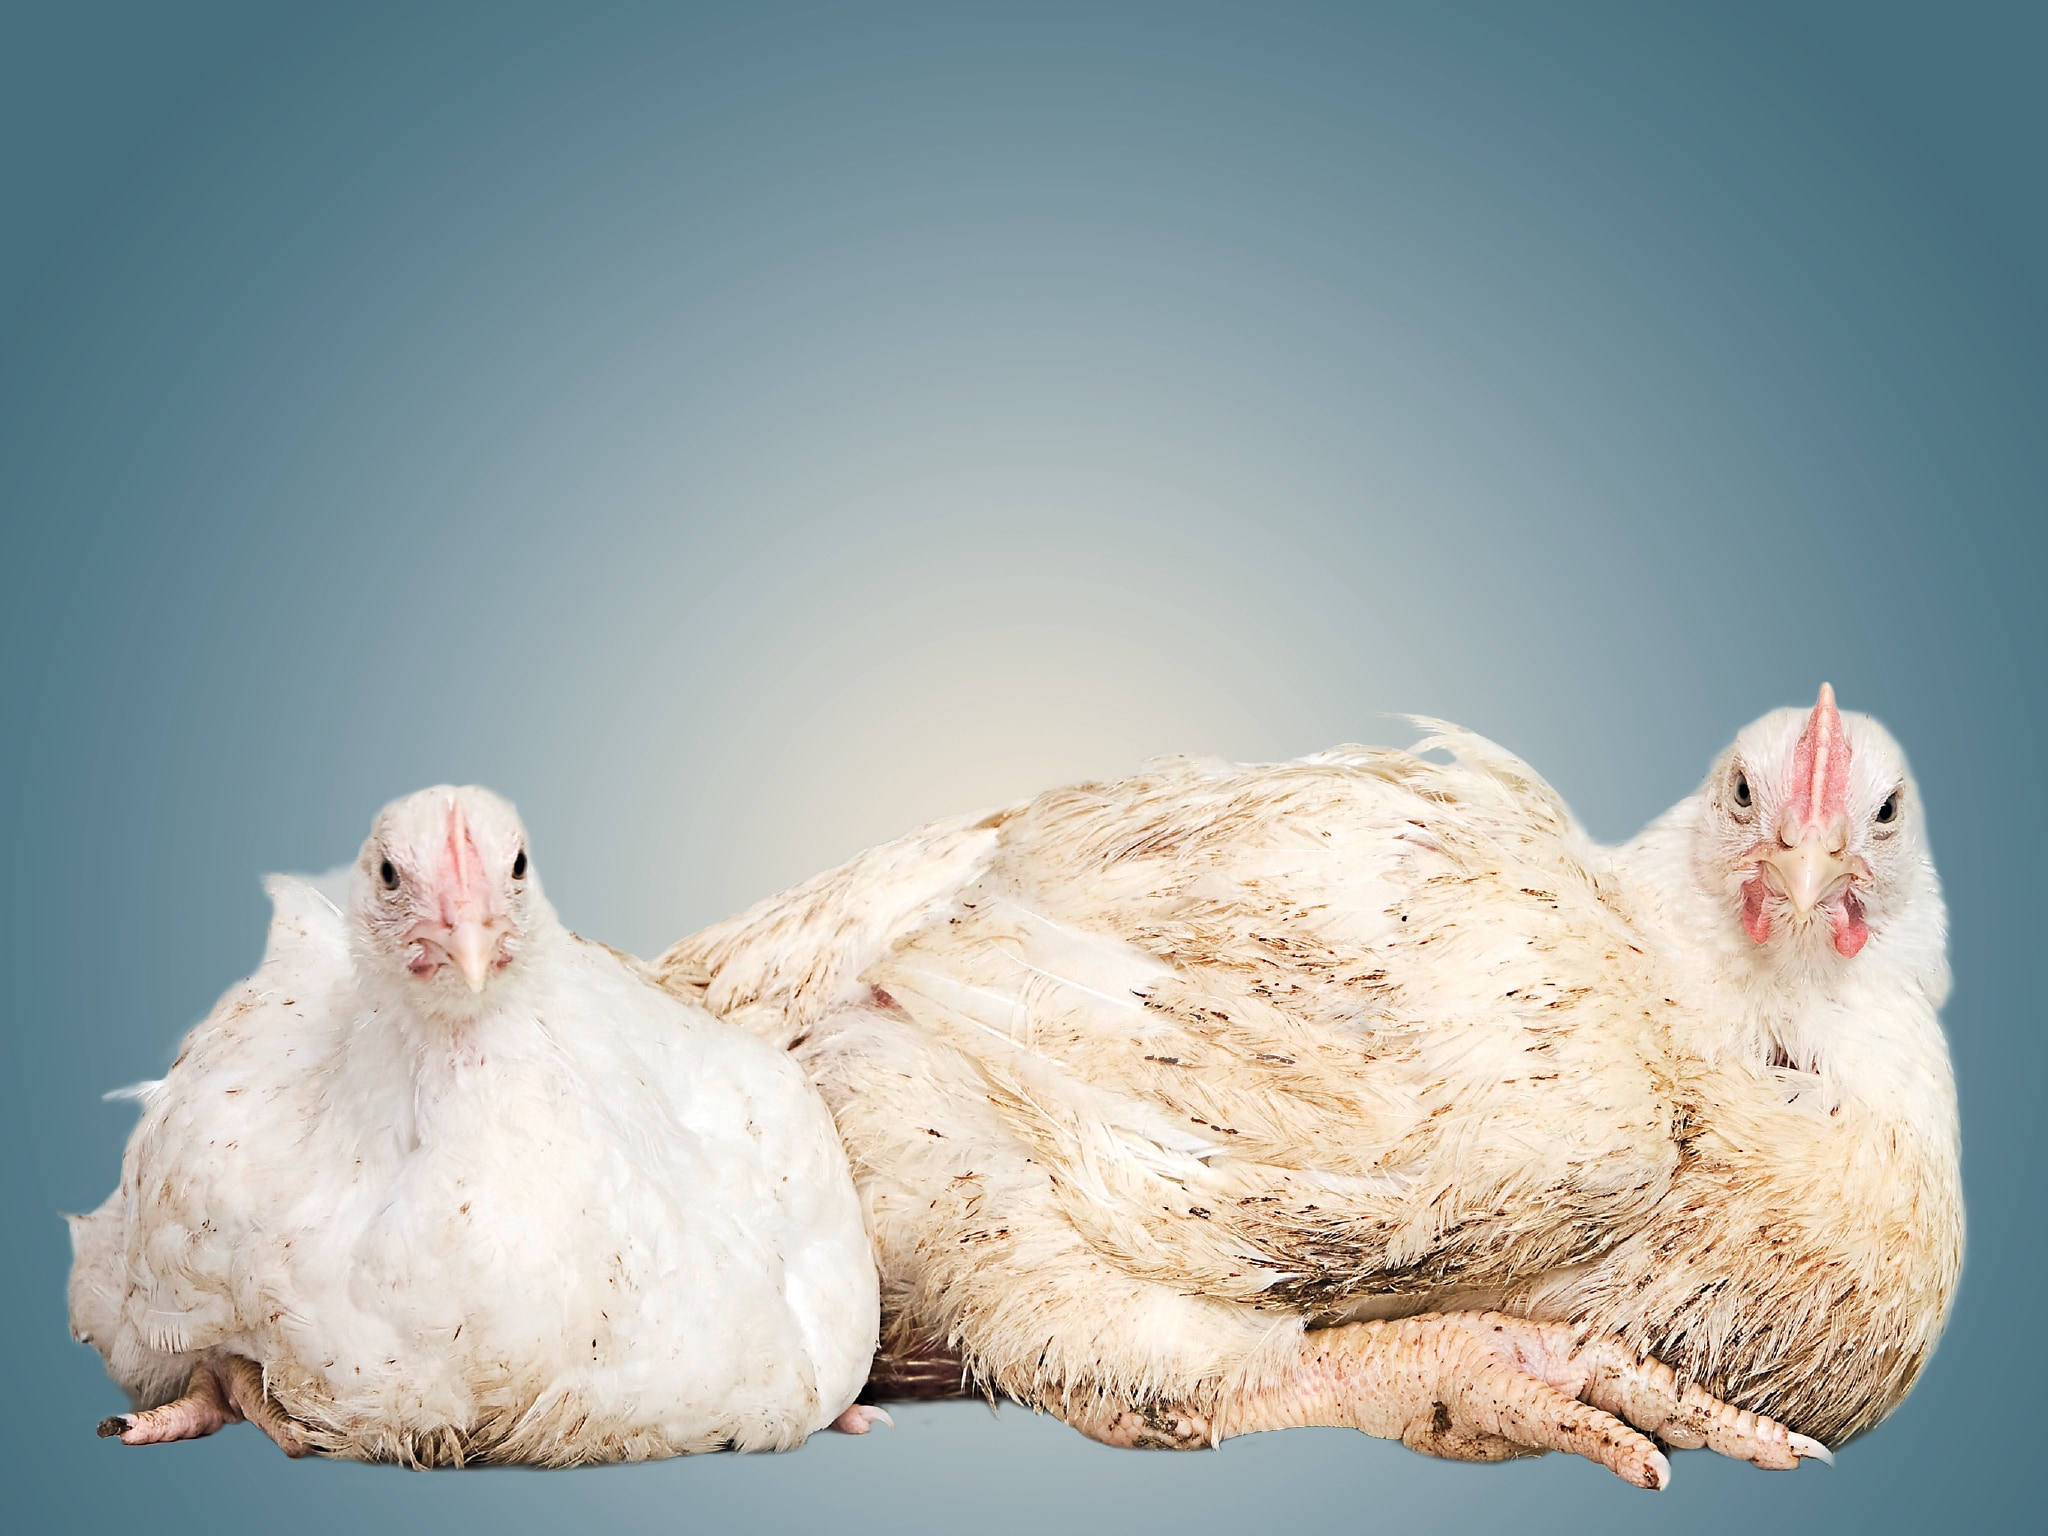 Meer kip en minder rund eten is beter voor het klimaat. Maar de kippen betalen een torenhoge prijs